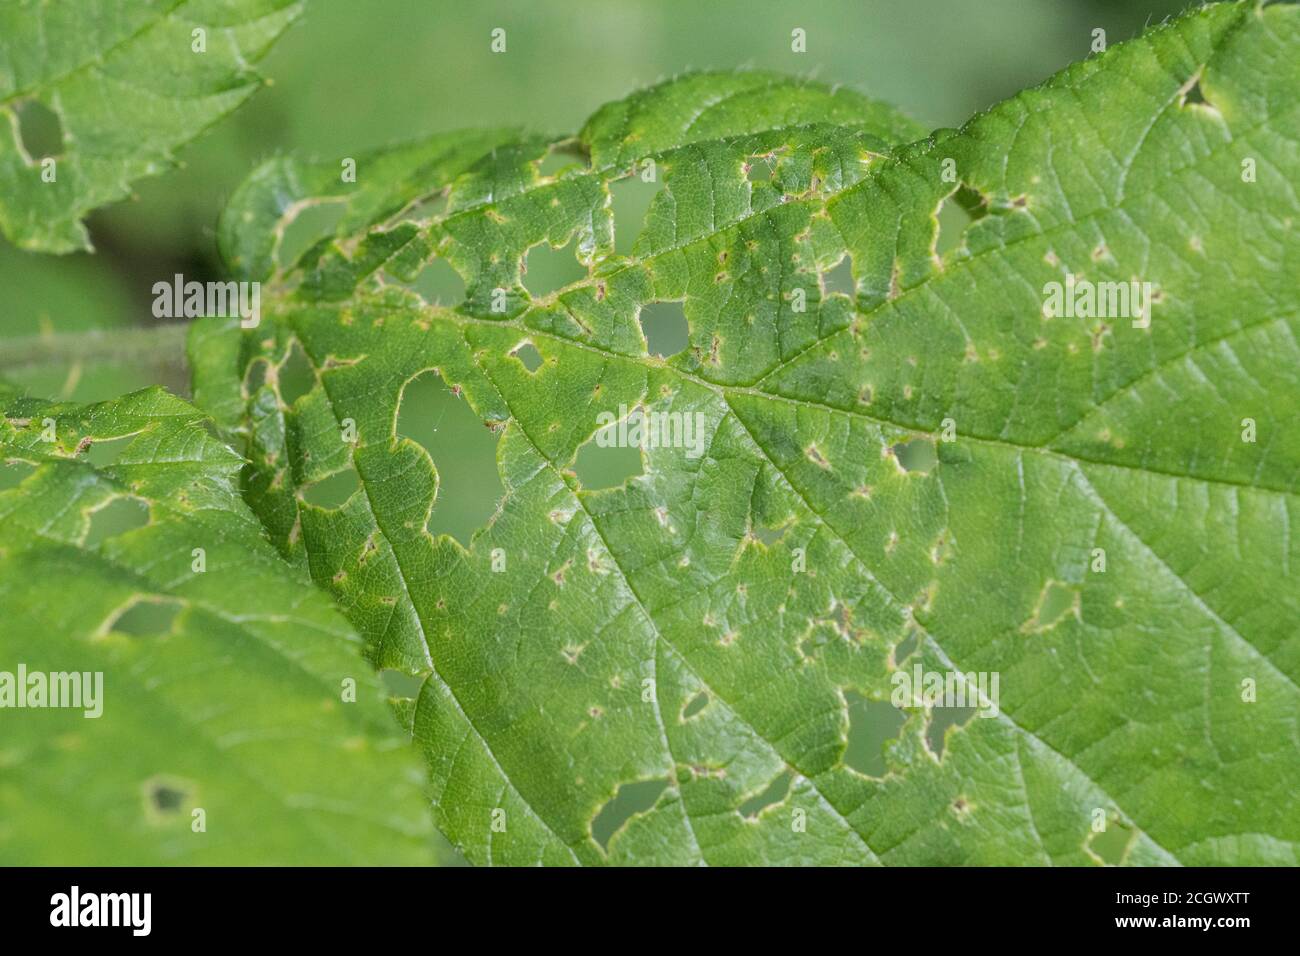 Blatt, das von Insekten weggefressen wird - möglicherweise ein Hazel-/Corylus avellana-Blatt oder Bramble-/Rubus fruticosus-Blatt (nicht bei der Aufnahme überprüft). Blattschäden Stockfoto